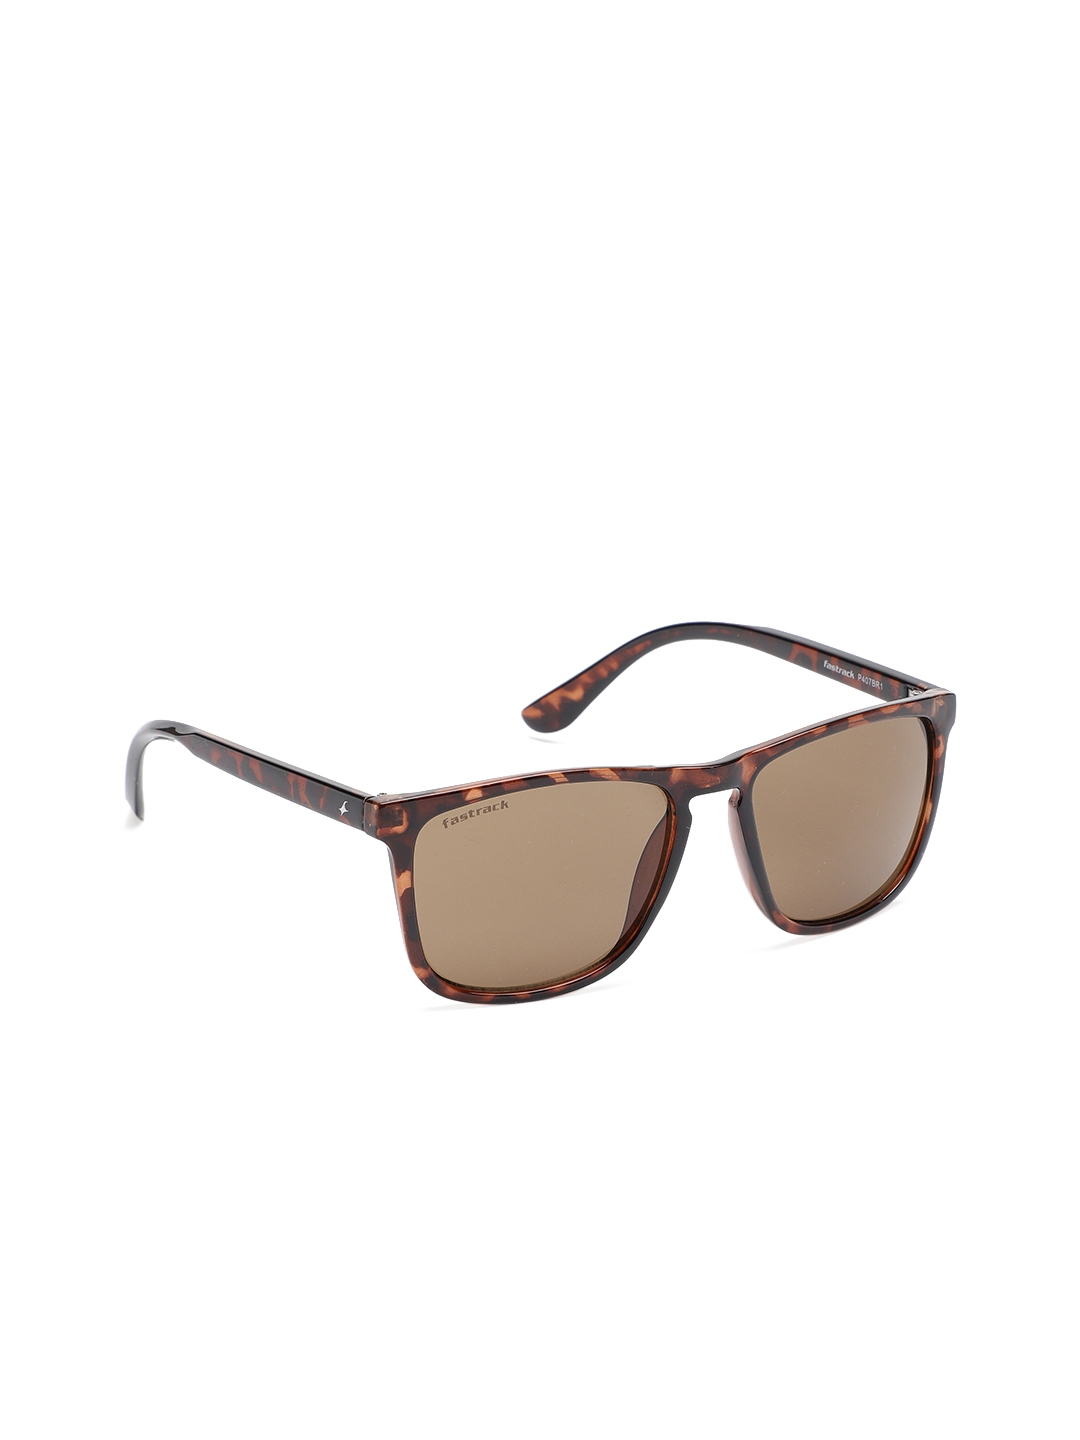 Buy Fastrack Men Rectangle Sunglasses P407BR1 - Sunglasses for Men 8456873  | Myntra